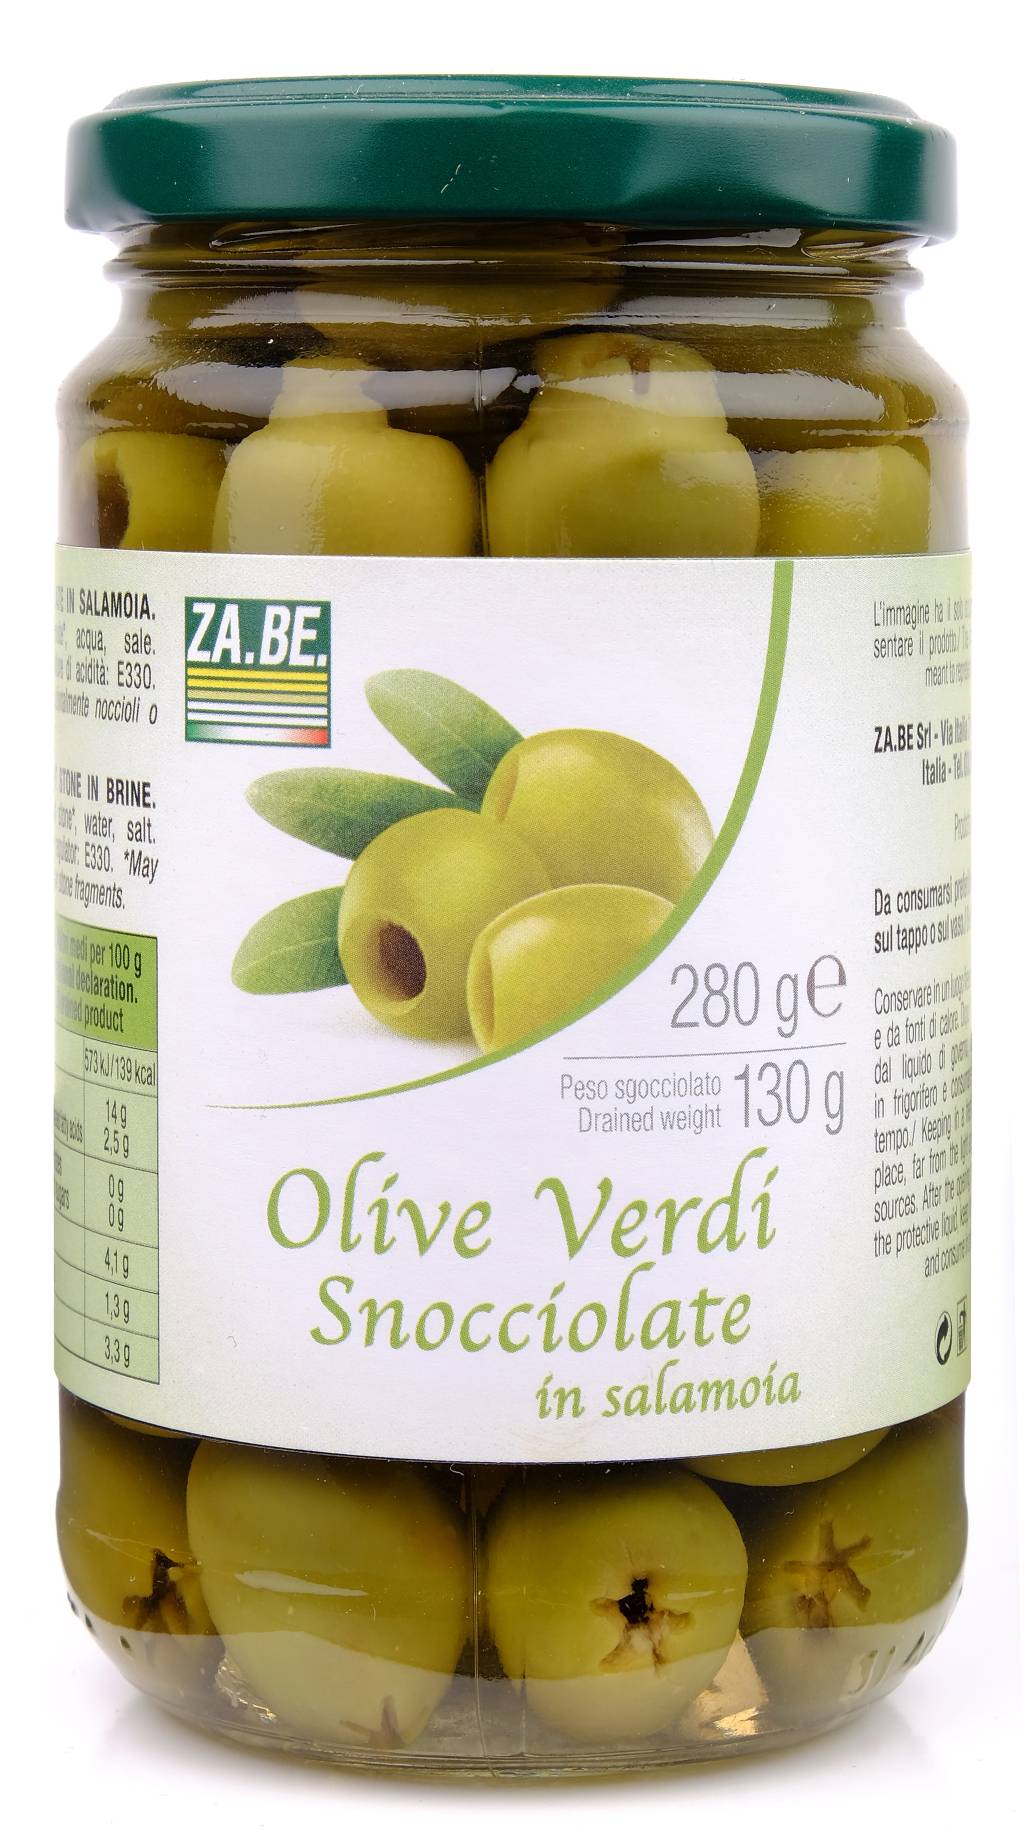 Olive Verdi Snocciolate